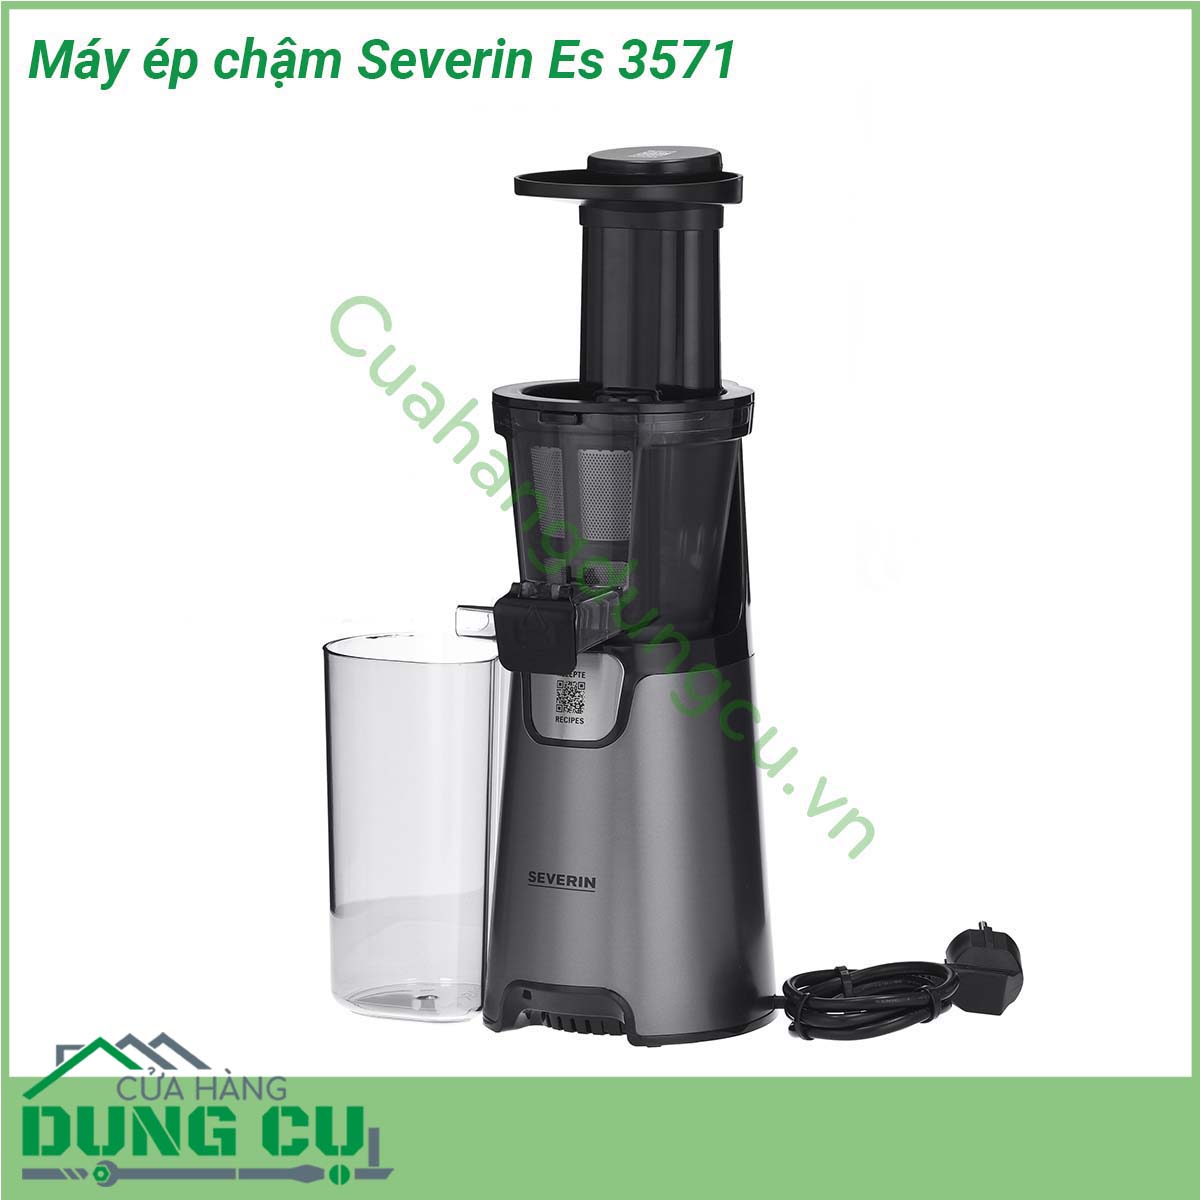 Máy ép chậm Severin Es 3571 được thiết kế với công nghệ hiện đại nên dòng máy ép chậm Severin hoạt động rất êm và ổn định mà đặc biệt không gây ra tiếng động ồn ào khi sử dụng Máy có thể ép triệt được nước của hoa quả rau củ mà không để lại cặn bã và vẫn đảm bảo giữ được các chất dinh dưỡng và vitamin có trong thực phẩm  